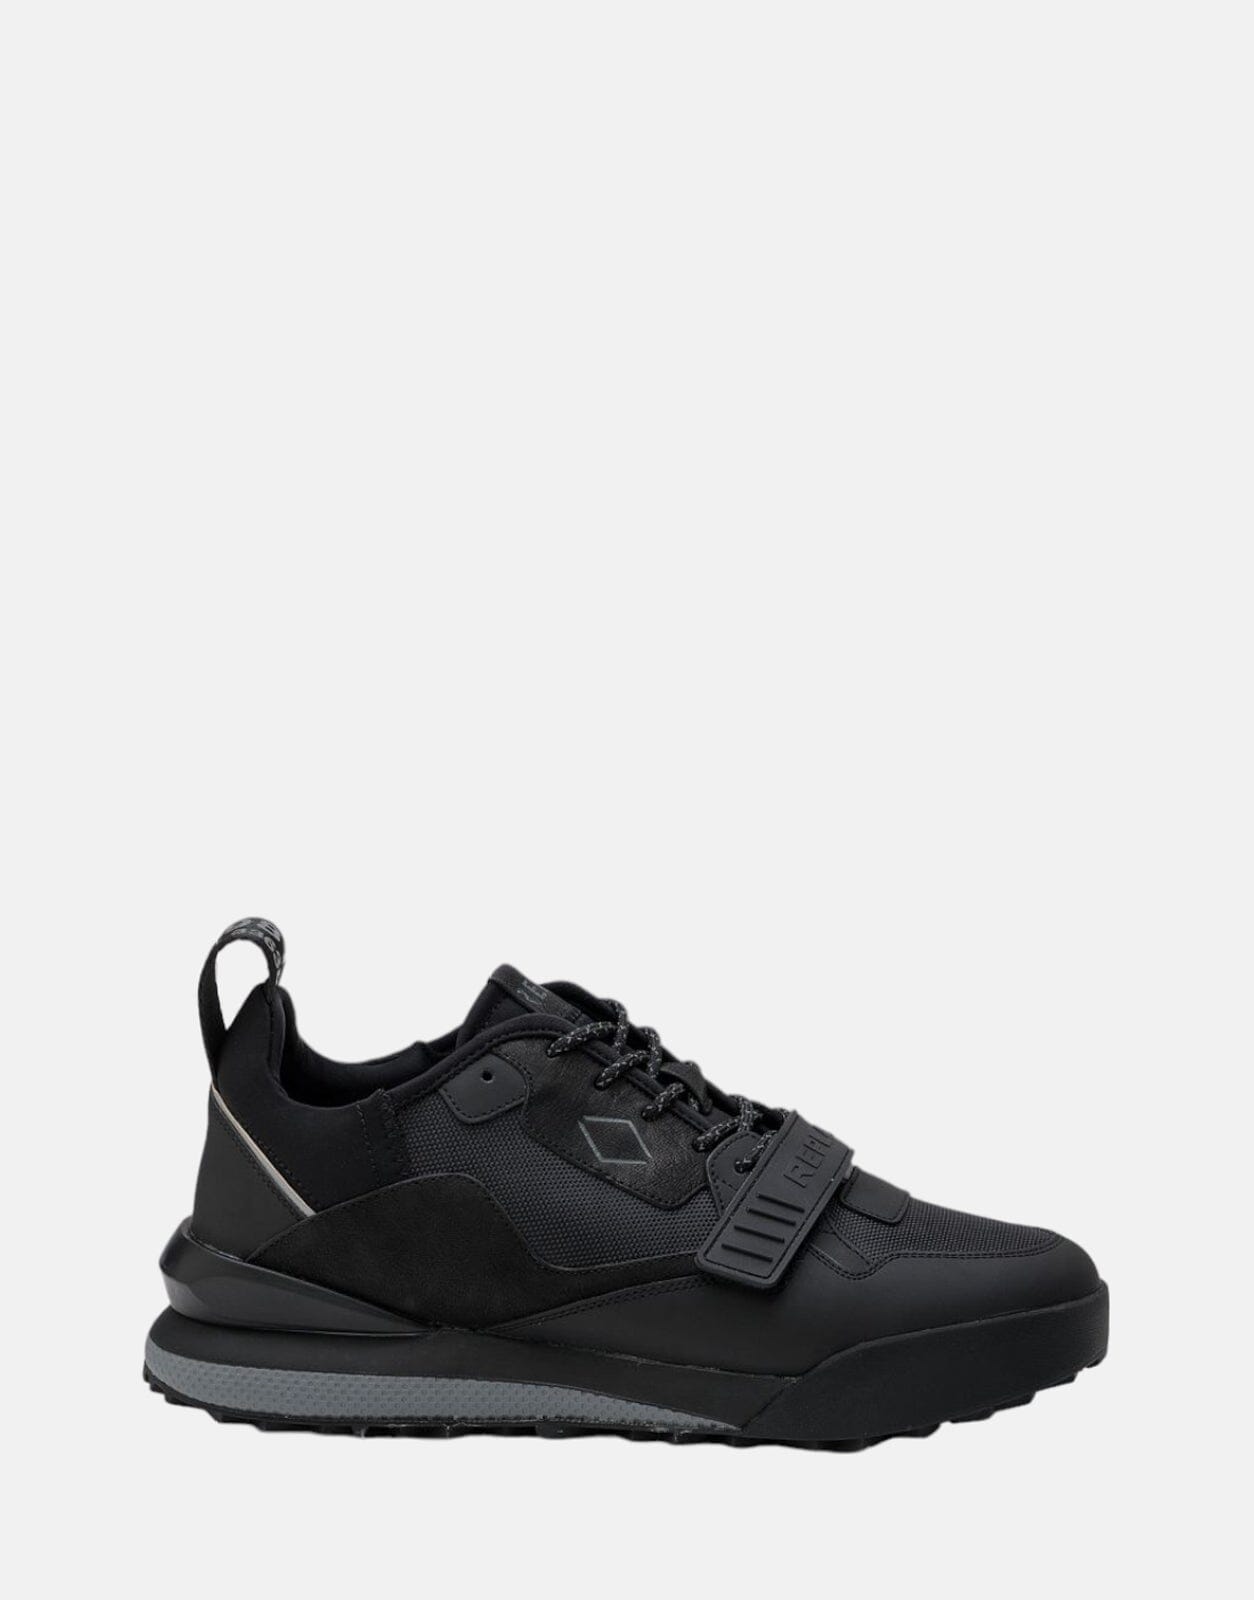 Replay Field Strap Black Sneakers - Subwear